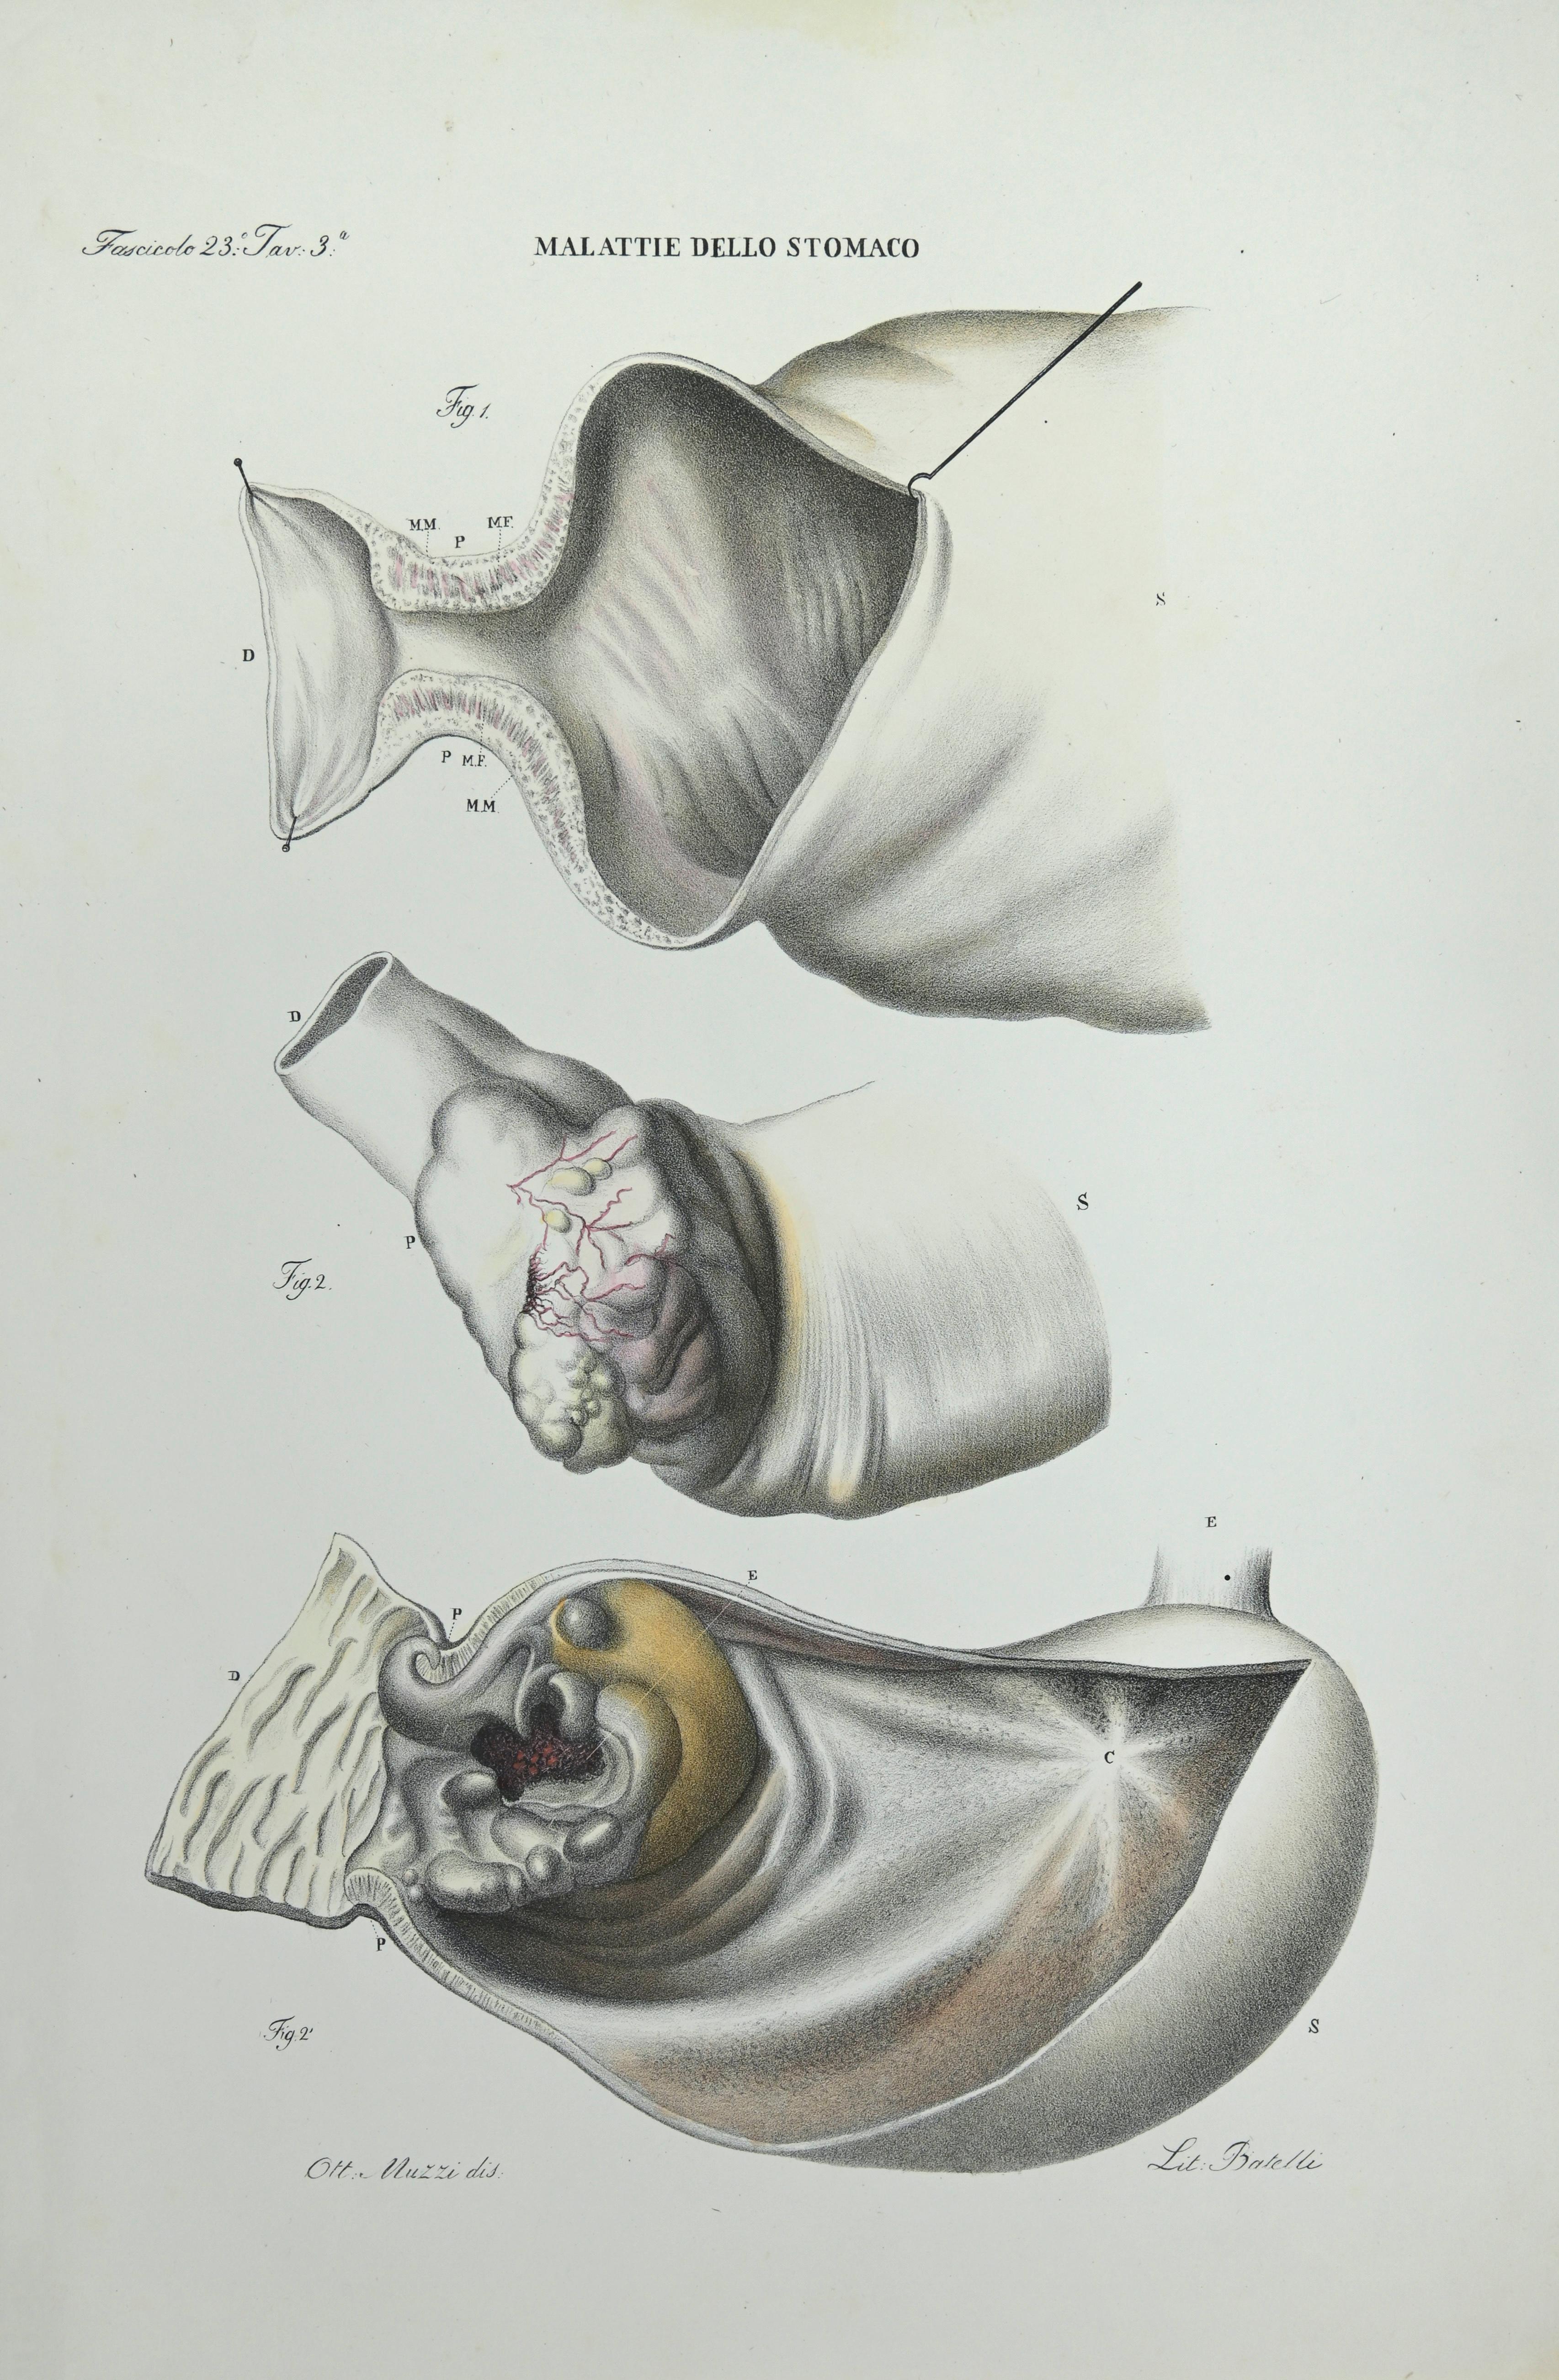 Erkrankungen des Magens   ist eine handkolorierte Lithographie von Ottavio Muzzi für die Ausgabe von Antoine Chazal, Human Anatomy, Druckerei Batelli und Ridolfi, aus dem Jahr 1843.
Signiert auf der Platte am unteren linken Rand. 

Das Kunstwerk